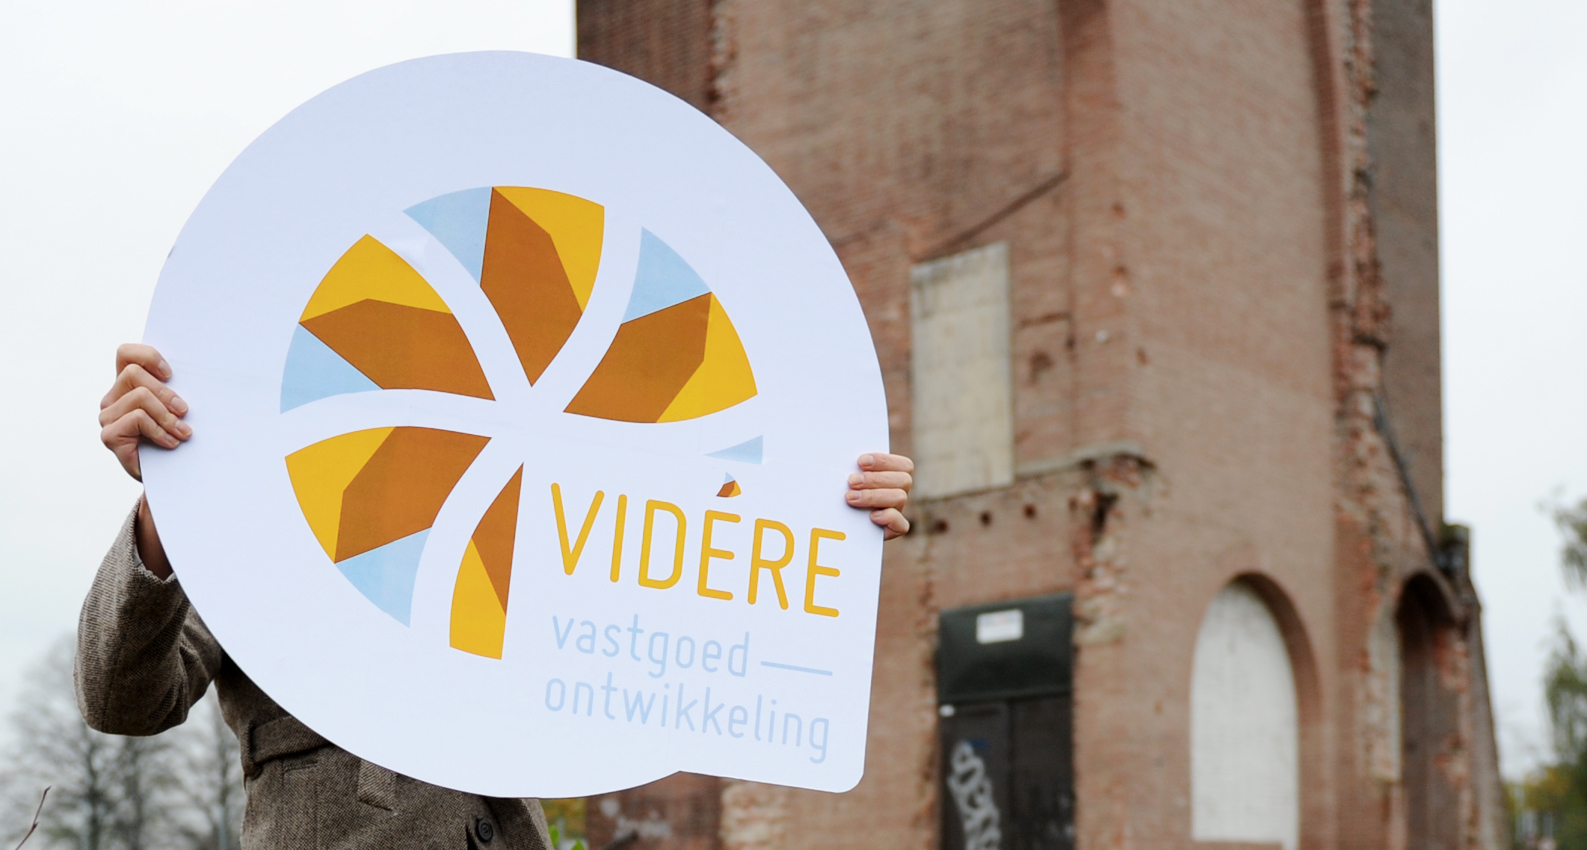 Logo_Videre_Vastgoedontwikkeling_Project03.jpg